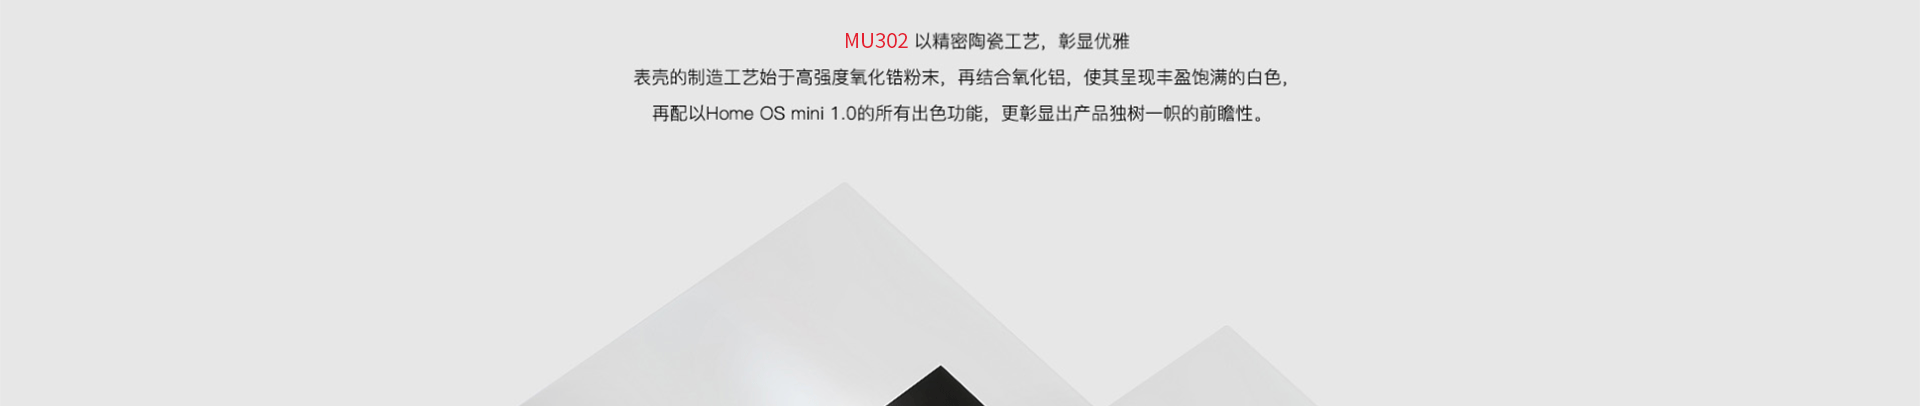 背景音乐面板-MU302